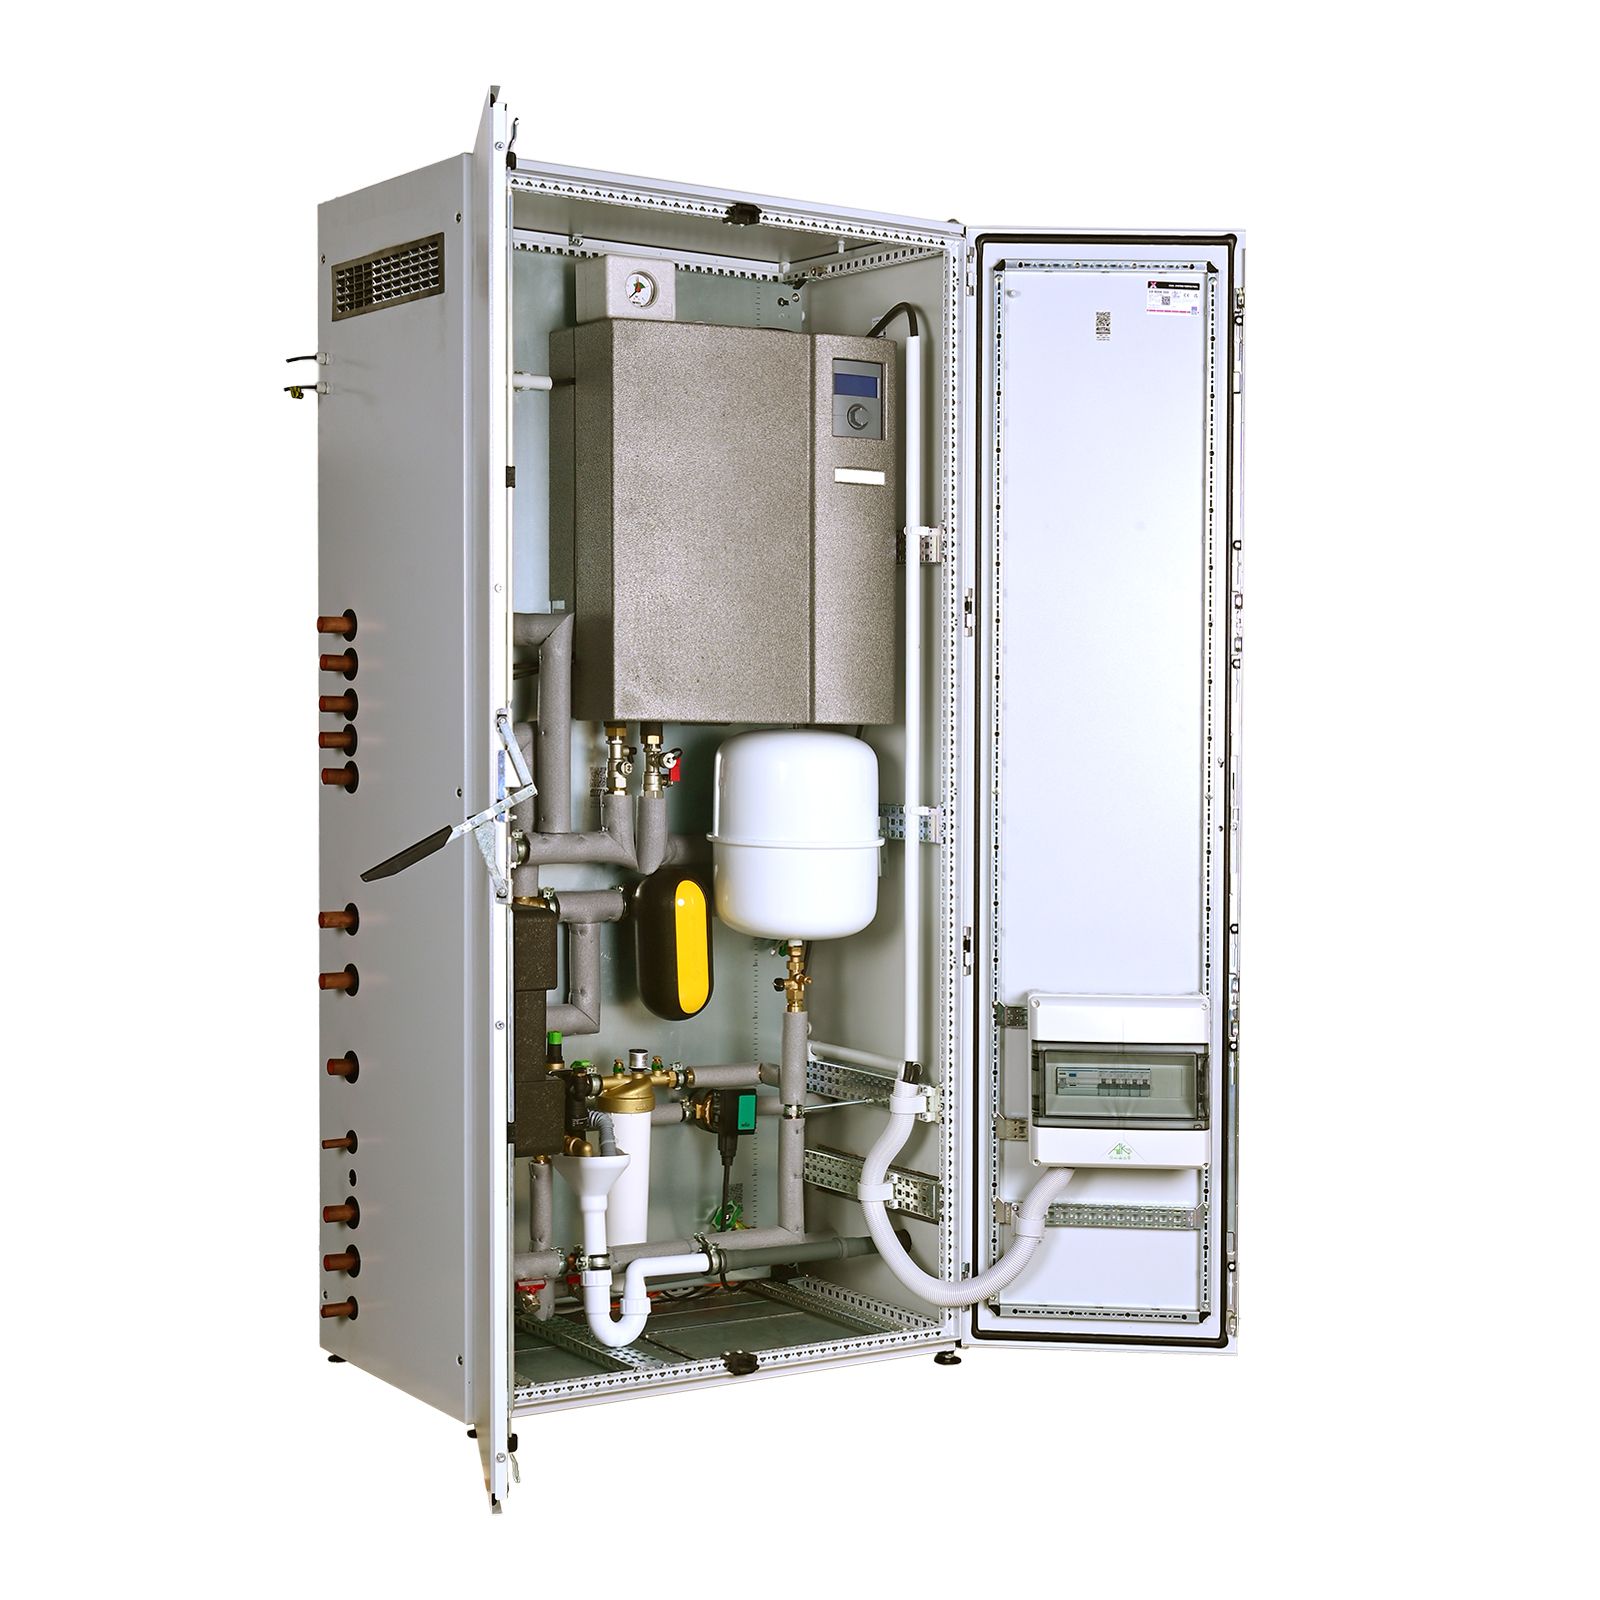 ThermCube Hybrid All-in-One Luft-Wasser Wärmepumpen System Speicheranschluss rechts